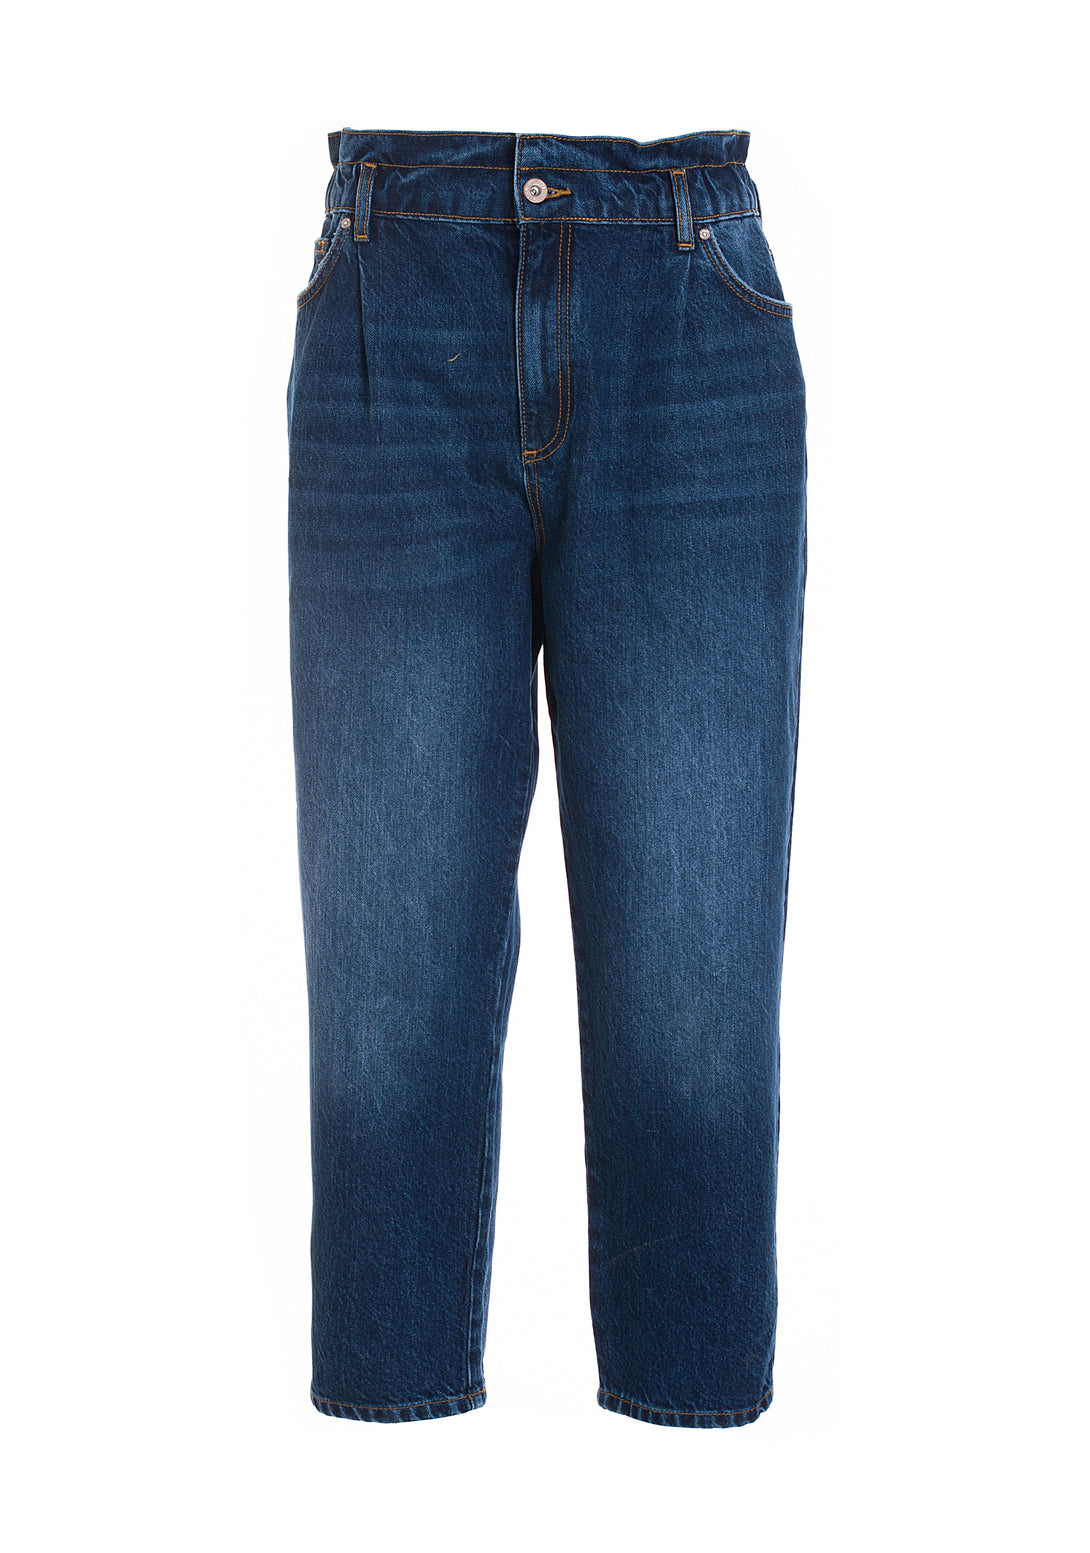 Jeans carrot in denim con lavaggio medio-FRACOMINA-FR22WVD003D429O1-130-JN-24